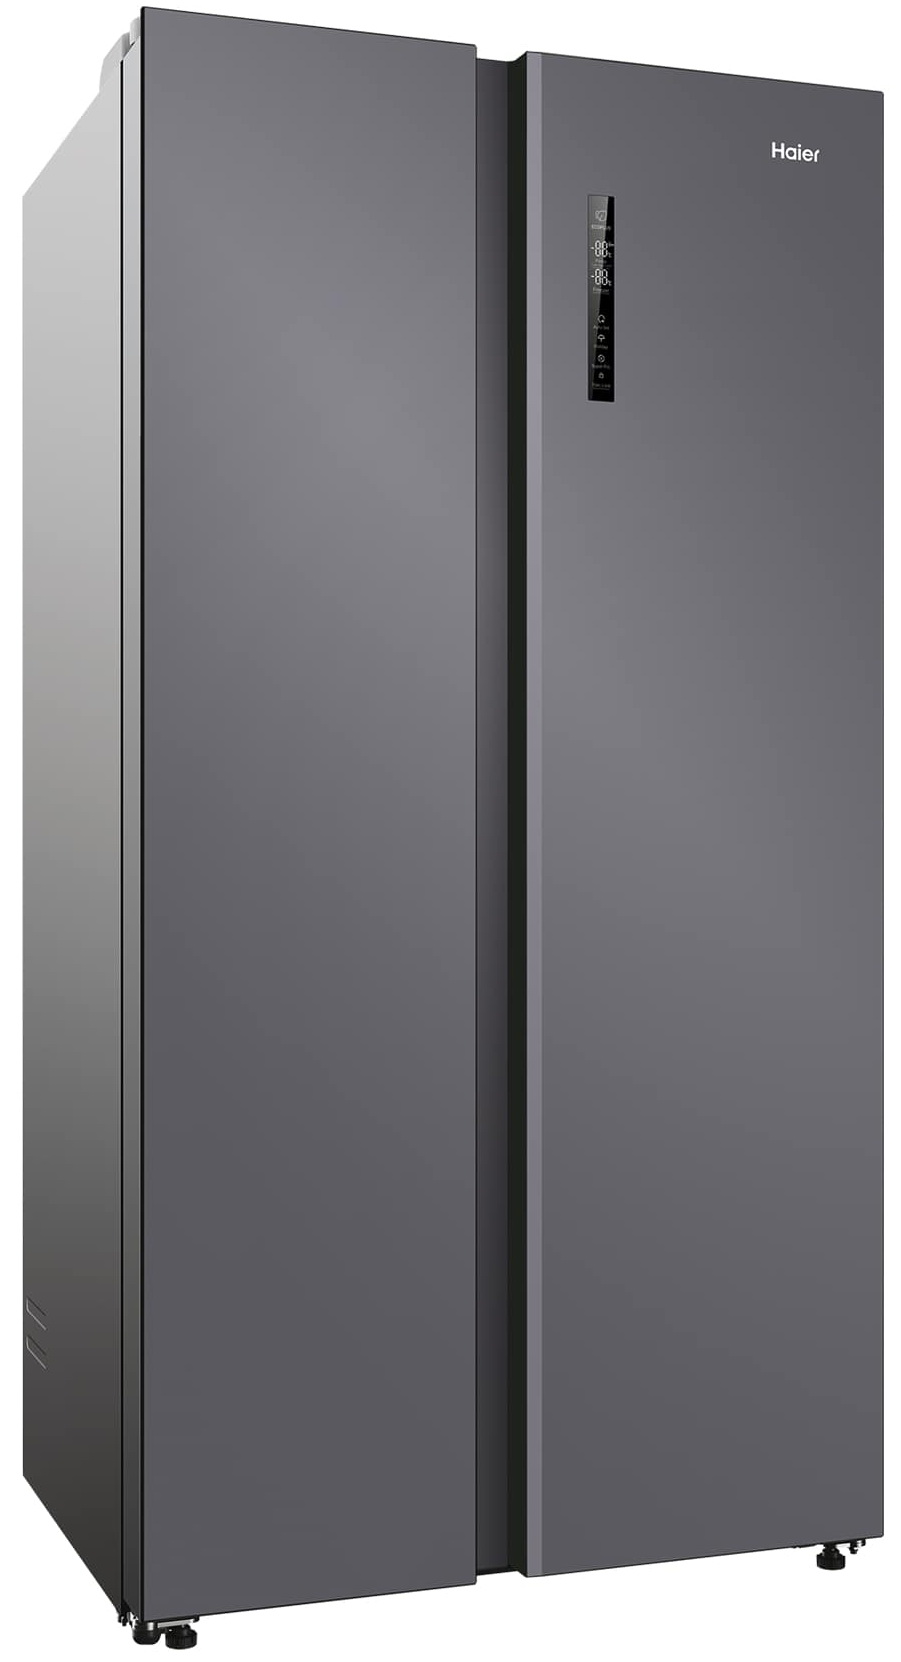 Холодильник Haier 600DM7RU серебристый